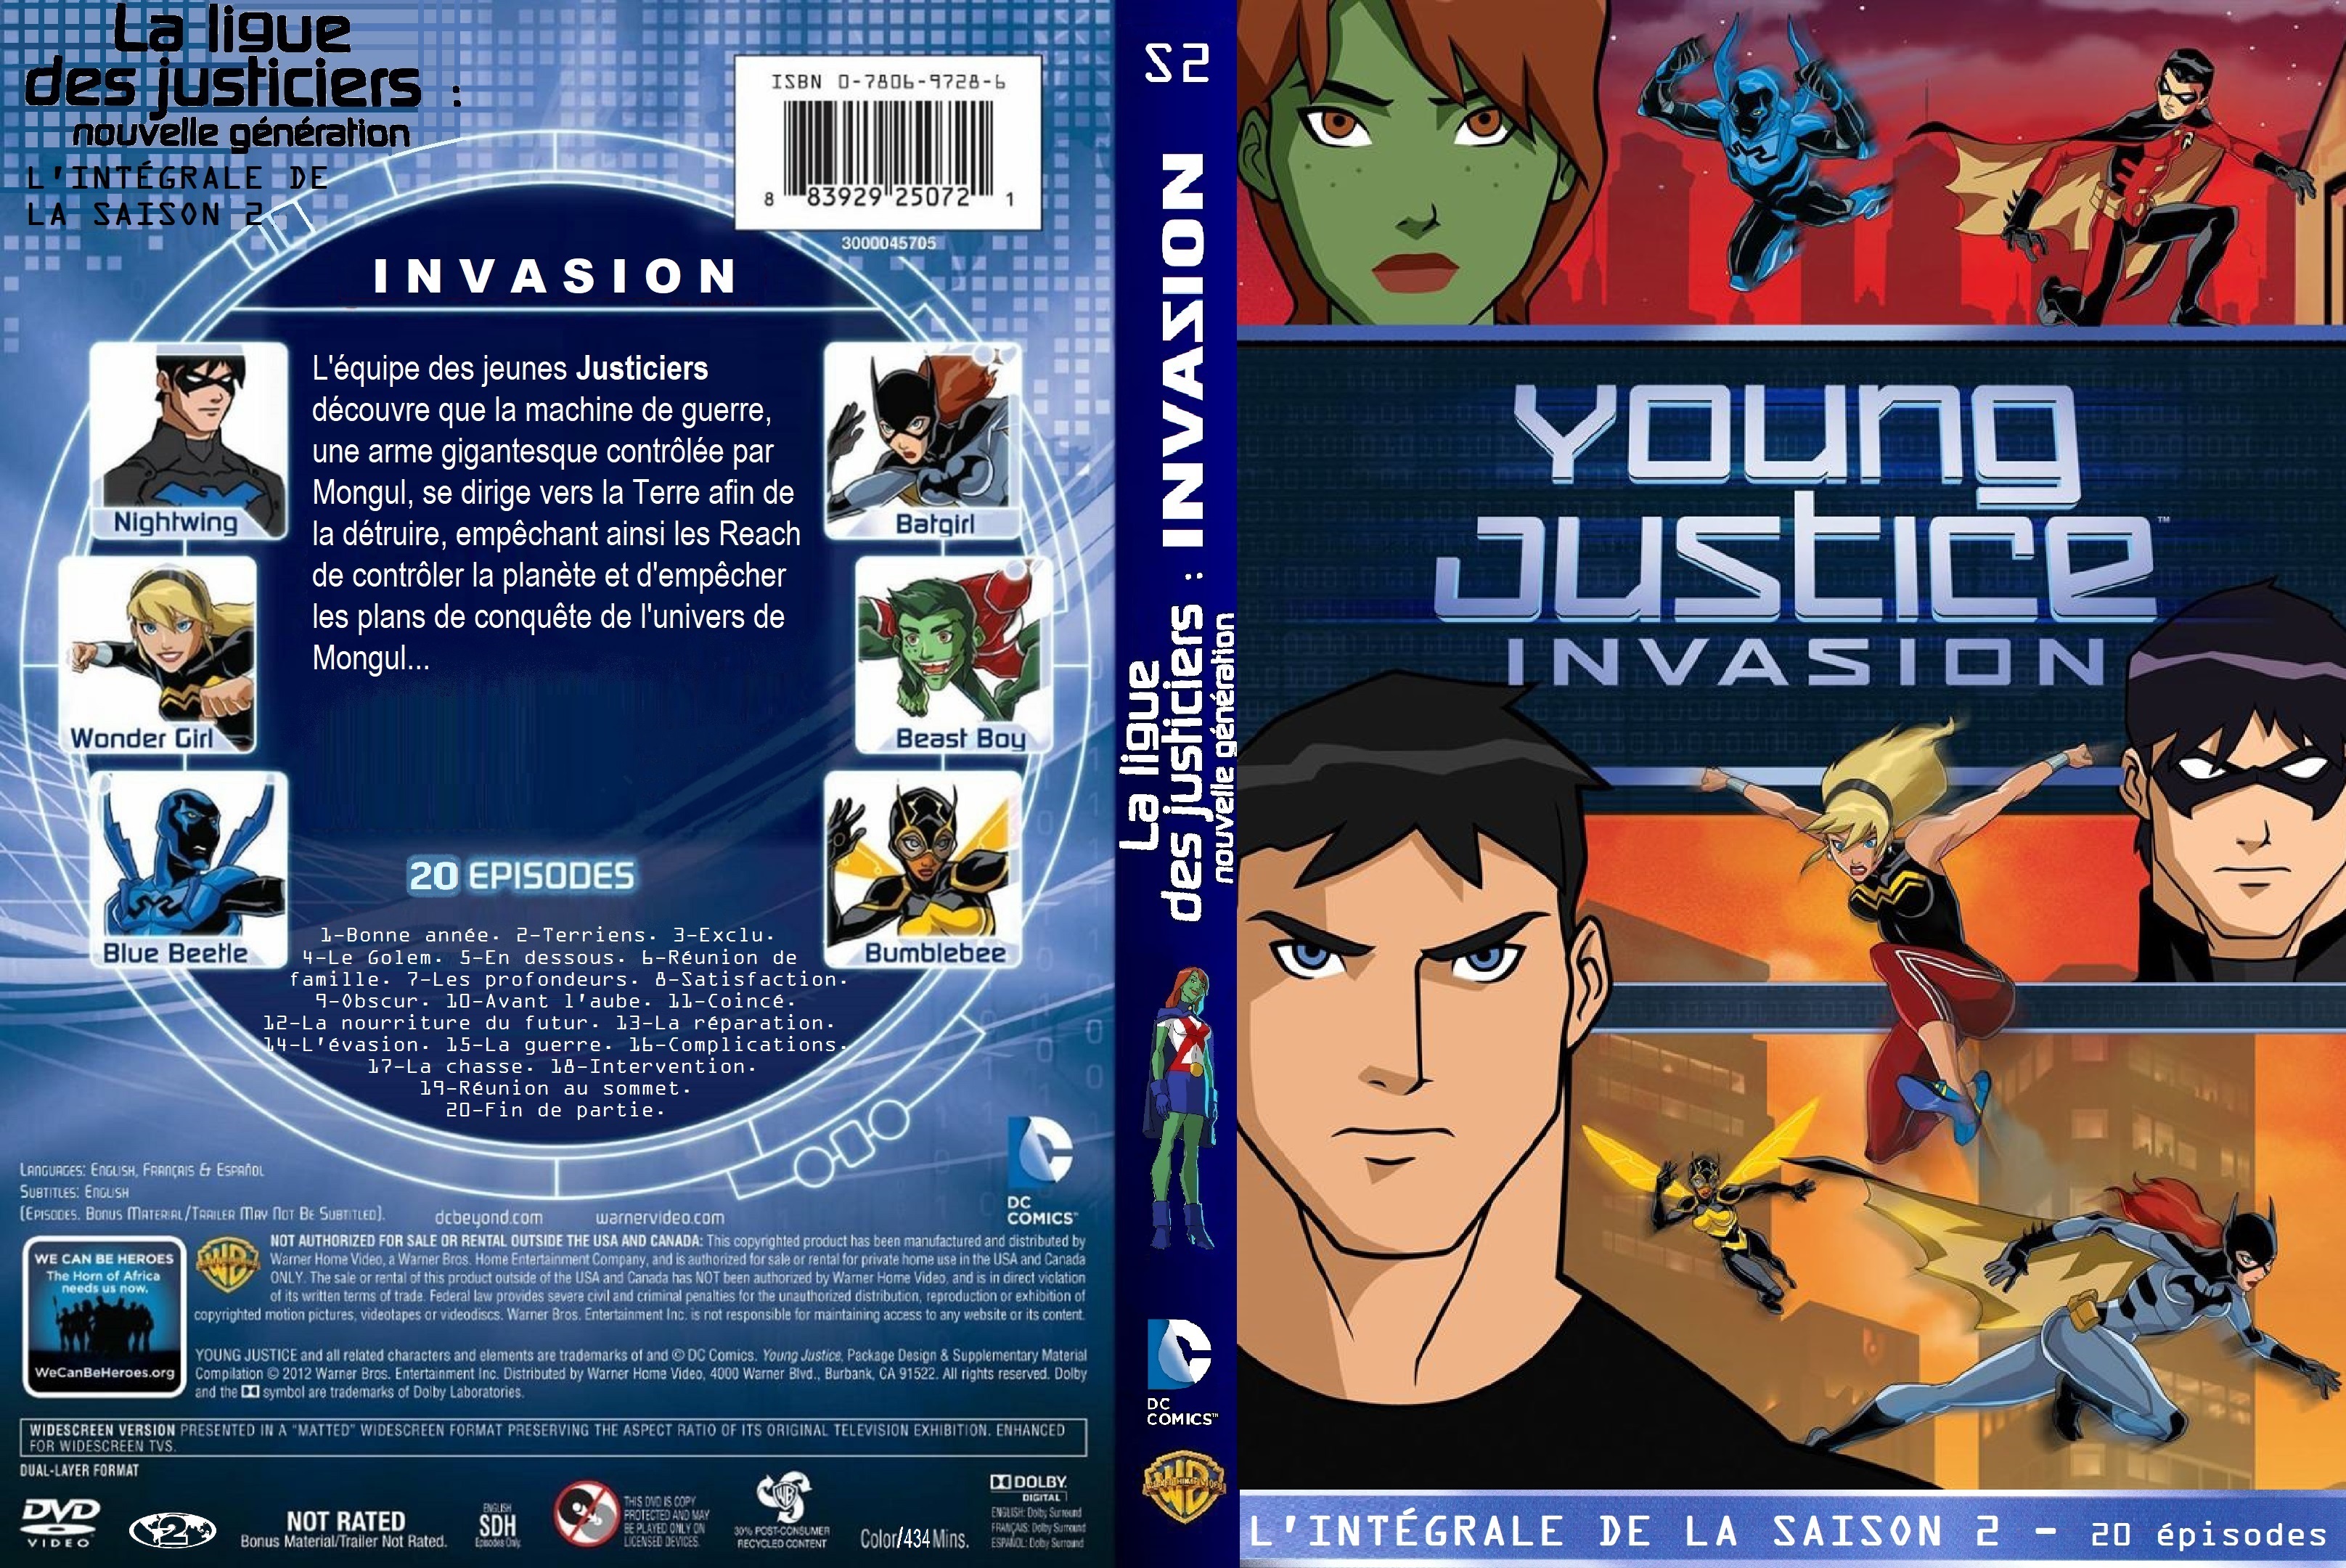 Jaquette DVD La ligue des justiciers nouvelle generation saison 2 Invasion custom